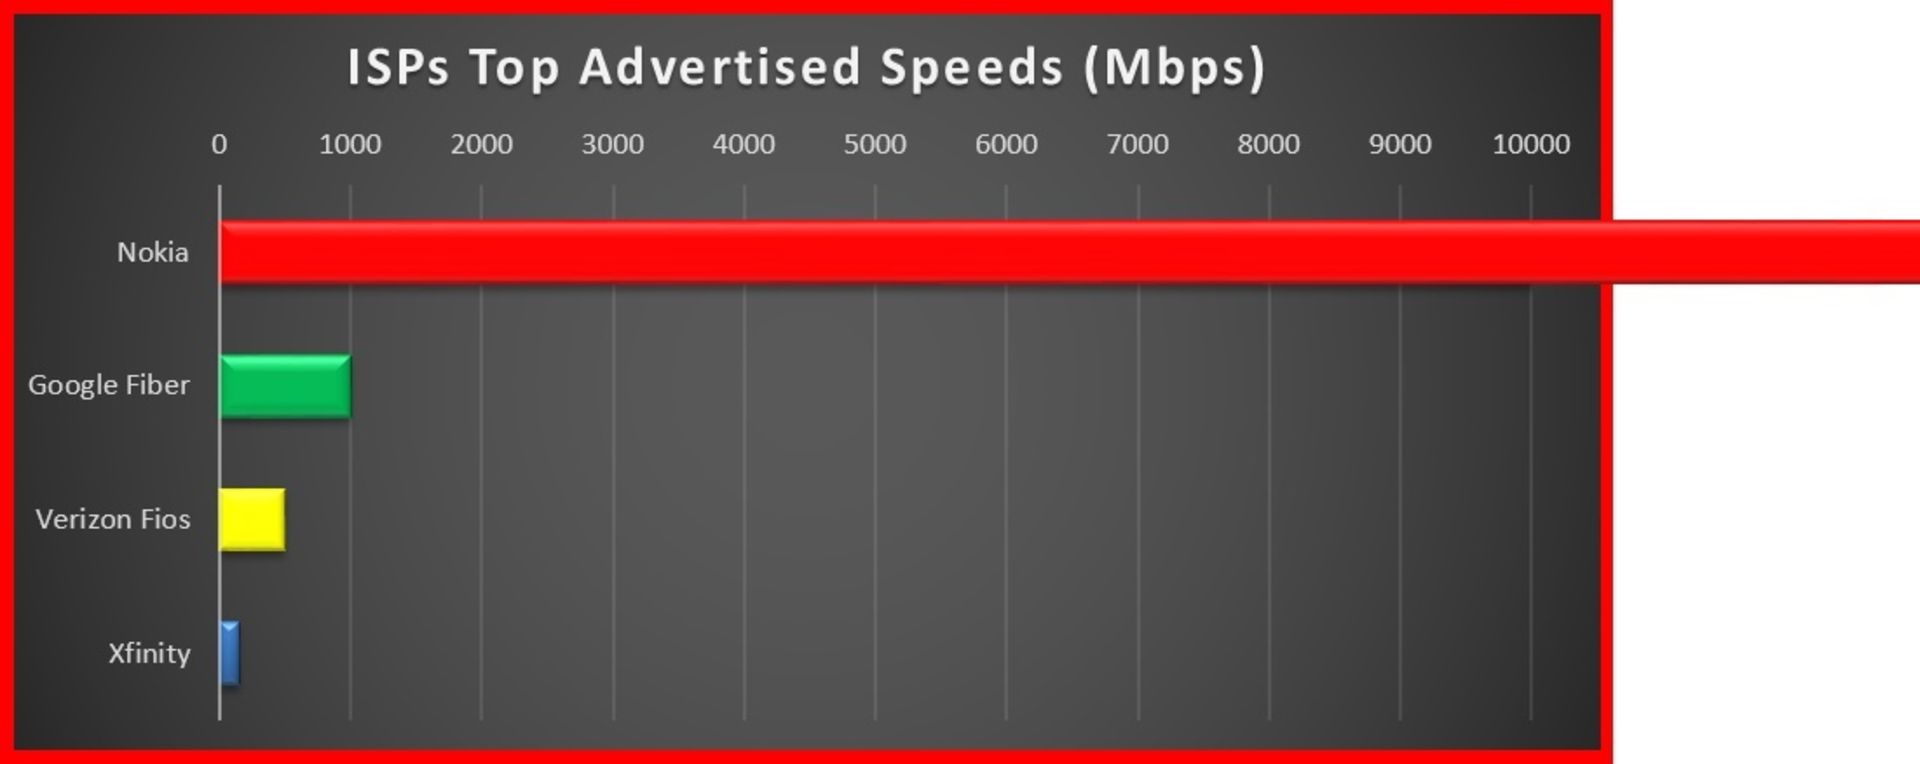 مقایسه سرعت اینترنت نوکیا با گوگل فایبر و ورایزون فیوس